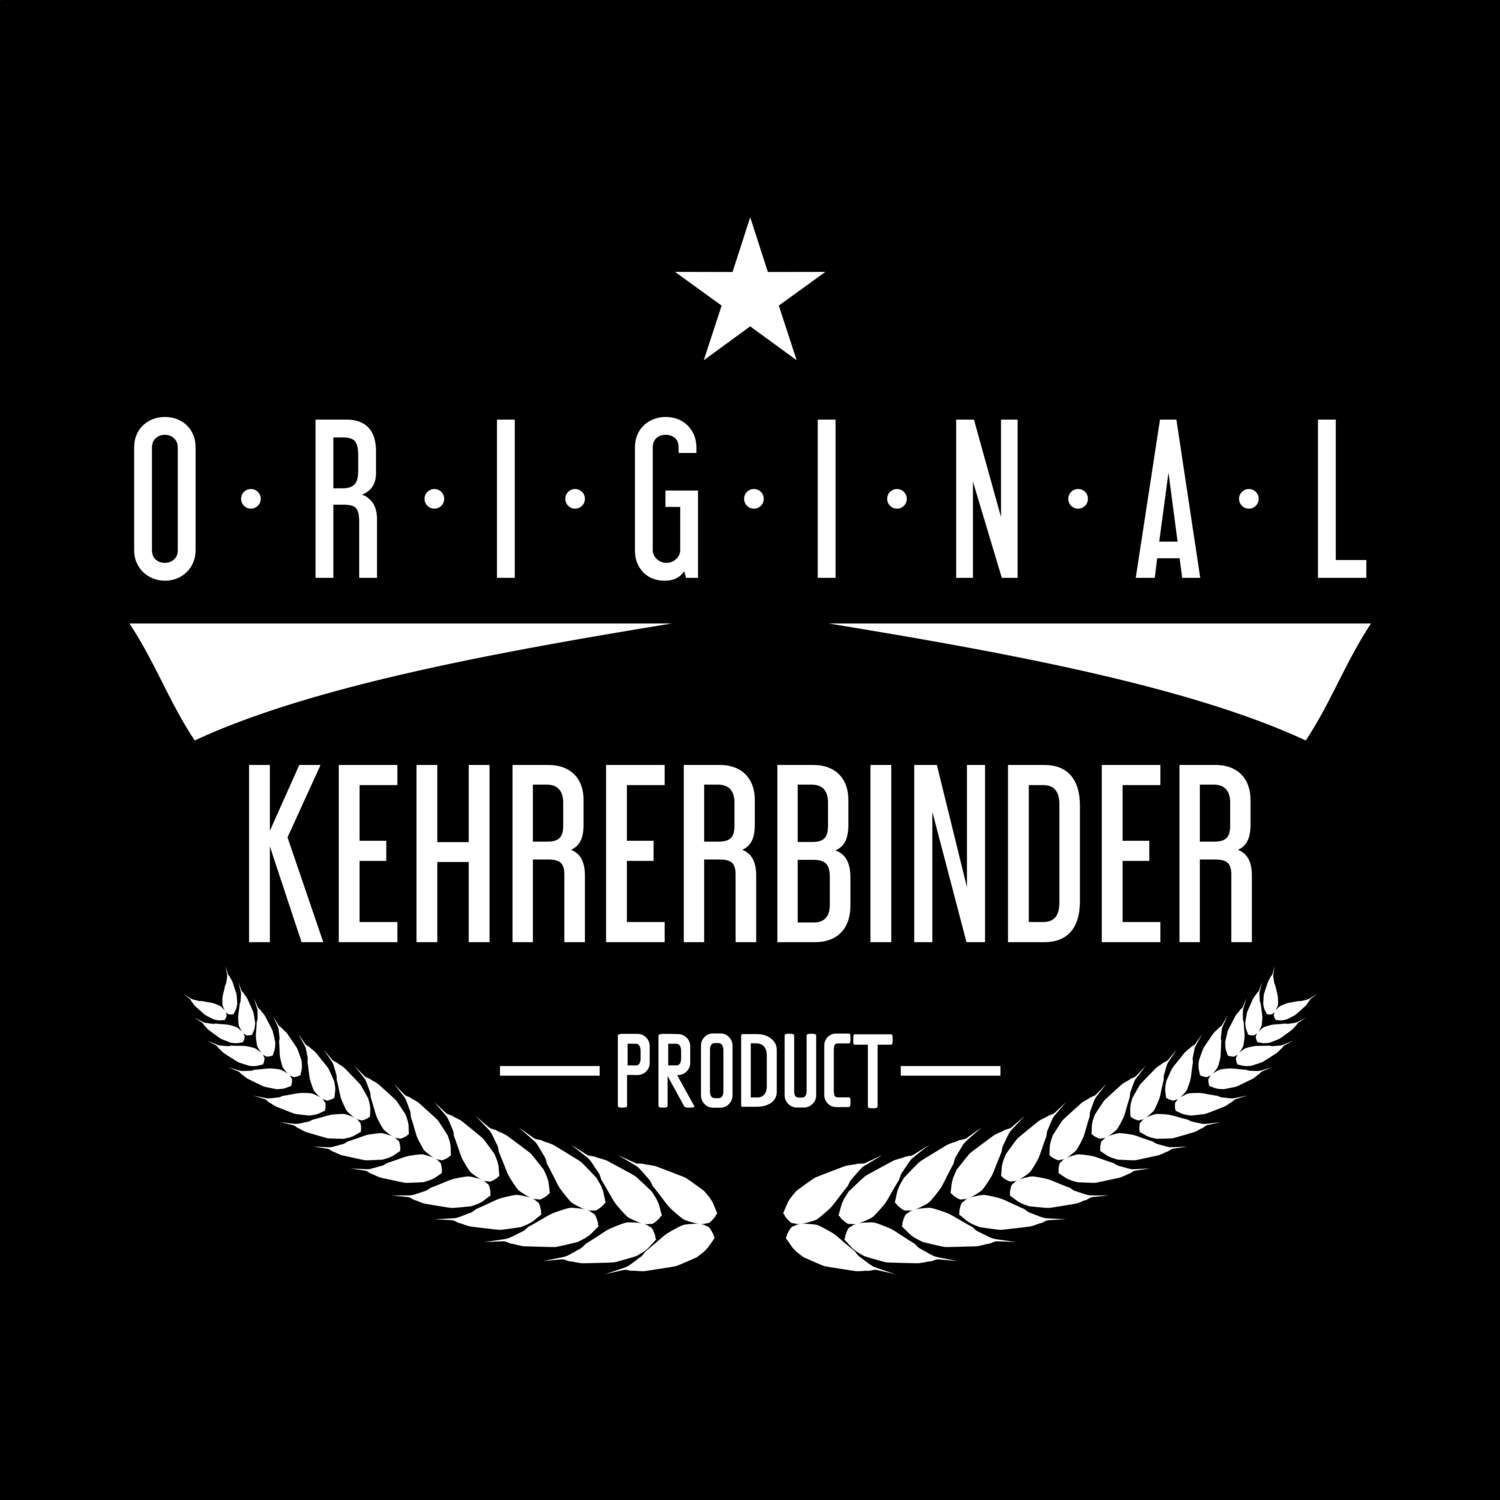 Kehrerbinder T-Shirt »Original Product«